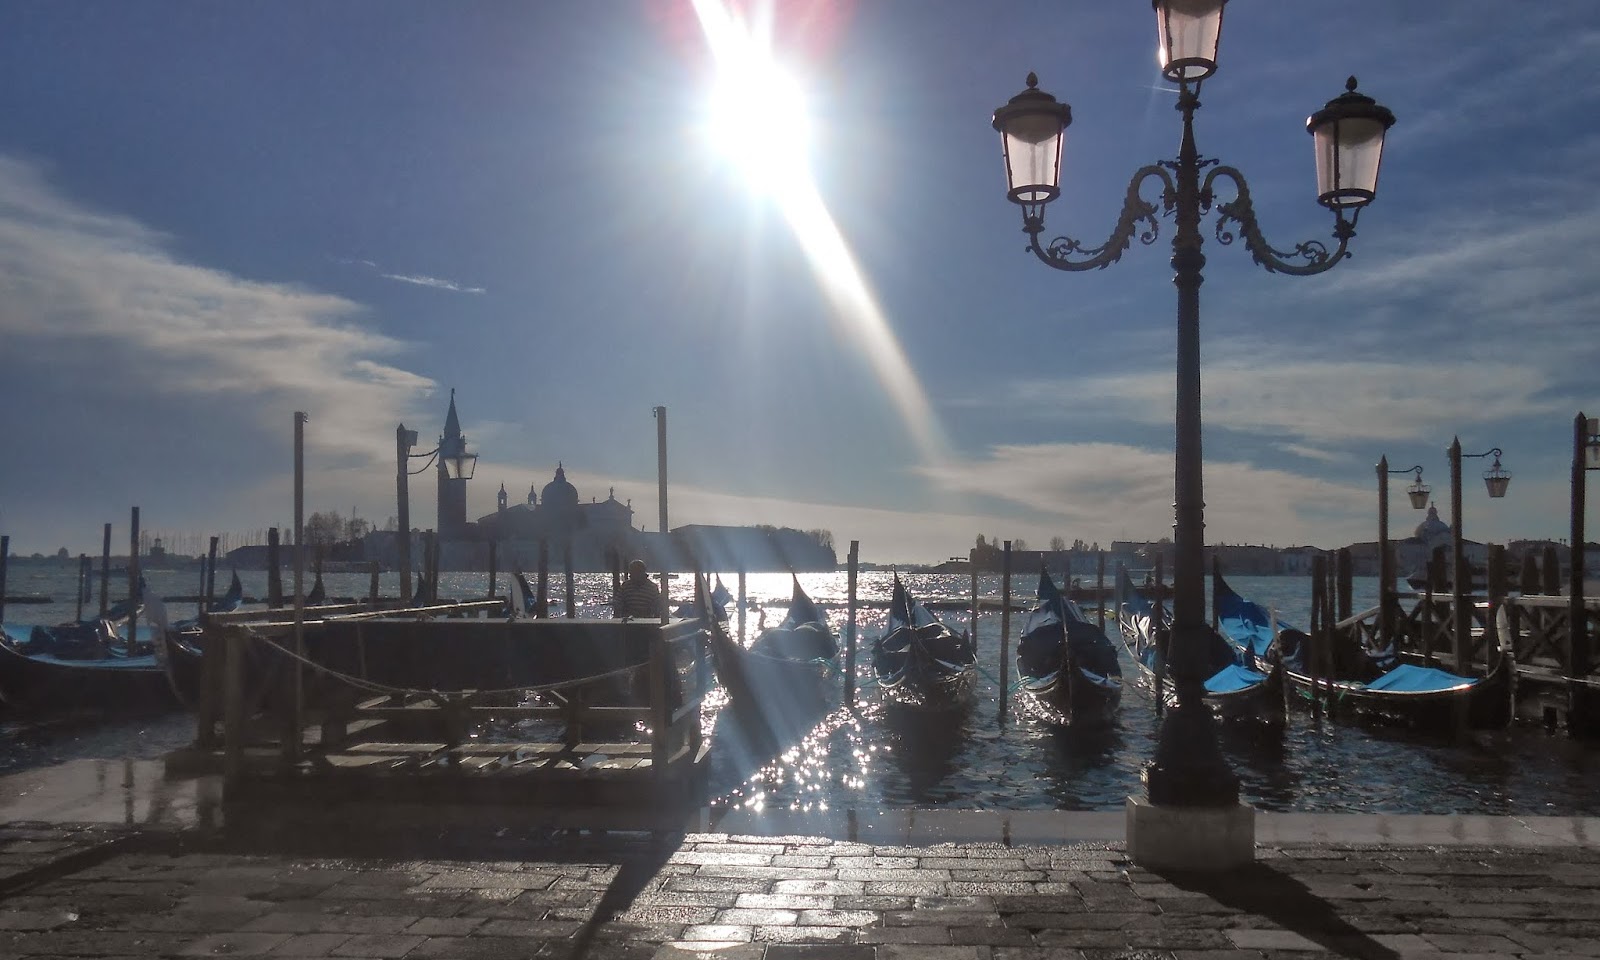 L'anno che verrà: Tra Glicine e Melograno: The Garden in Venice Blog in 2013 .. and 2014